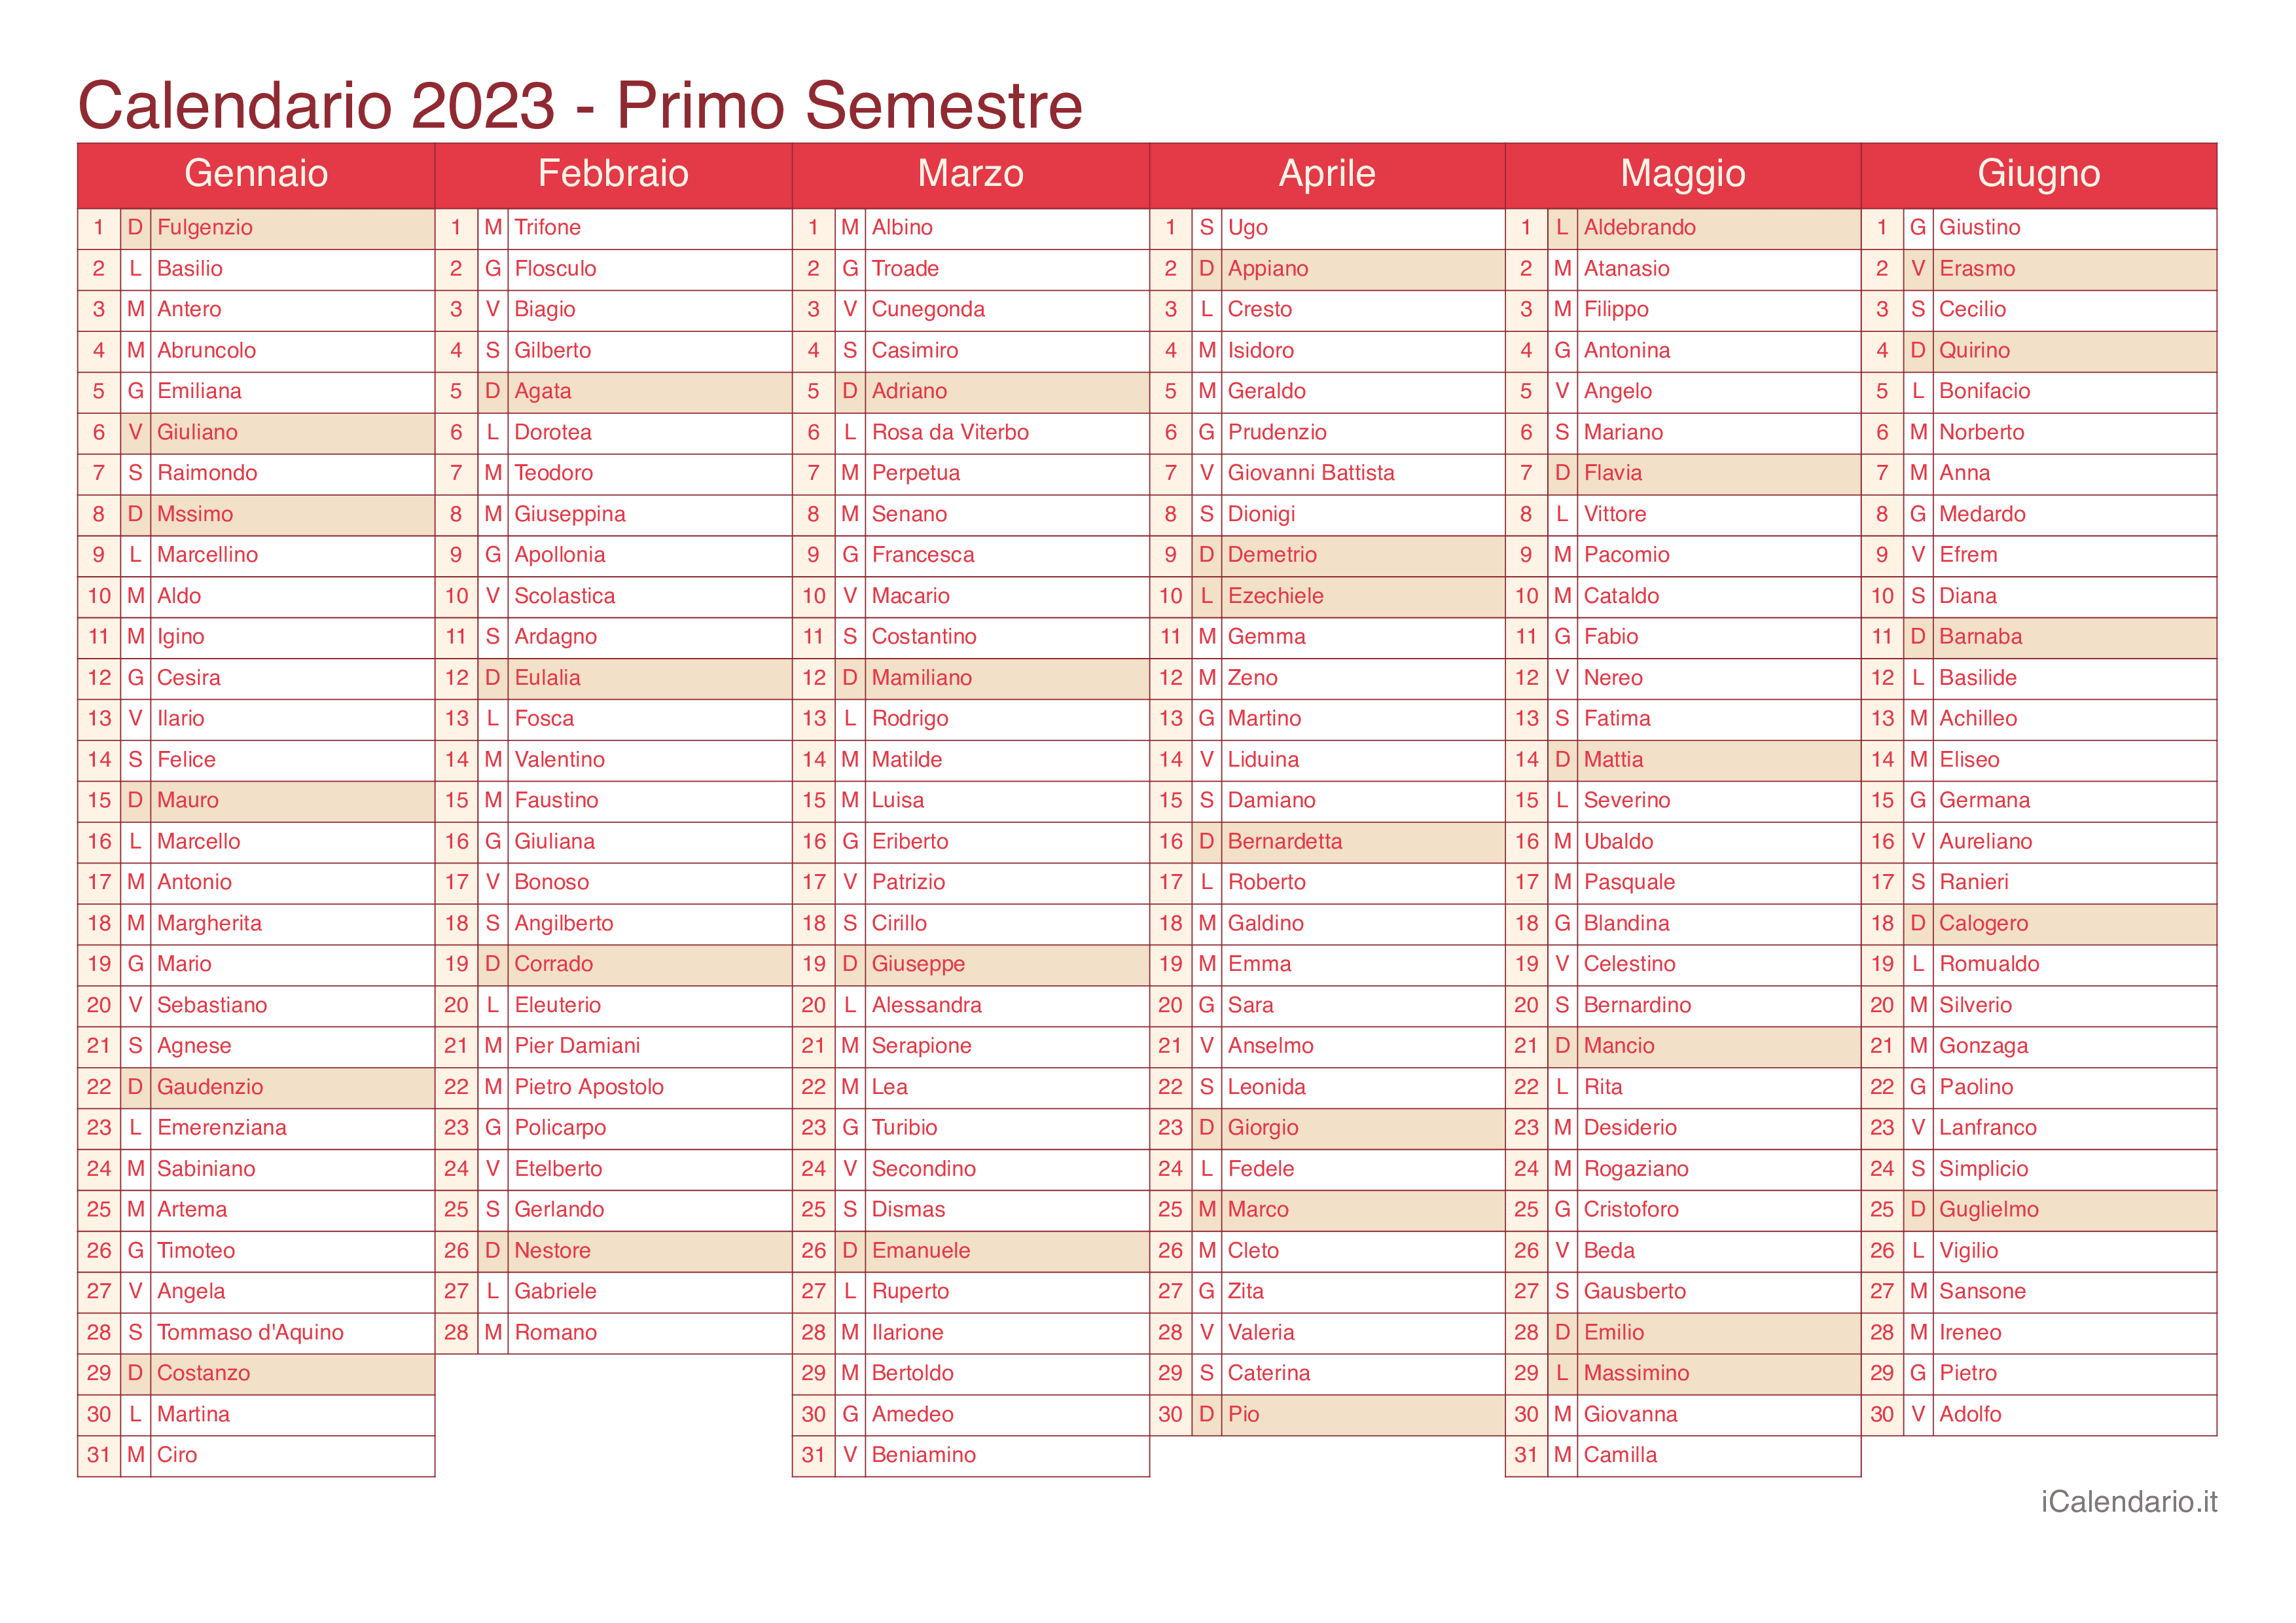 Calendario semestrale 2023 con santi e festivi - Cherry